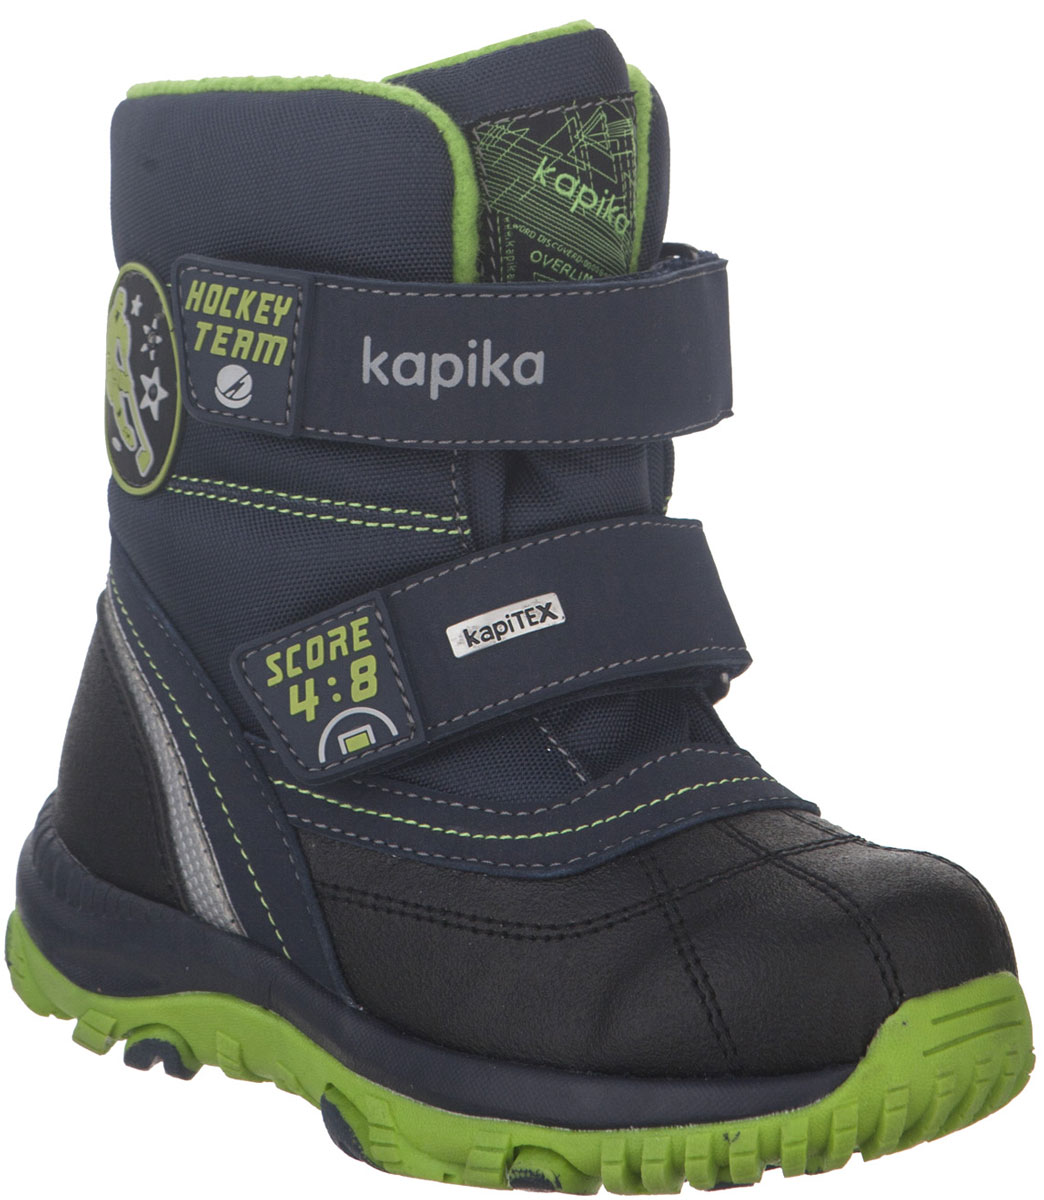 Ботинки для мальчика Kapika, цвет: черный, синий, салатовый. 42217-2. Размер 31